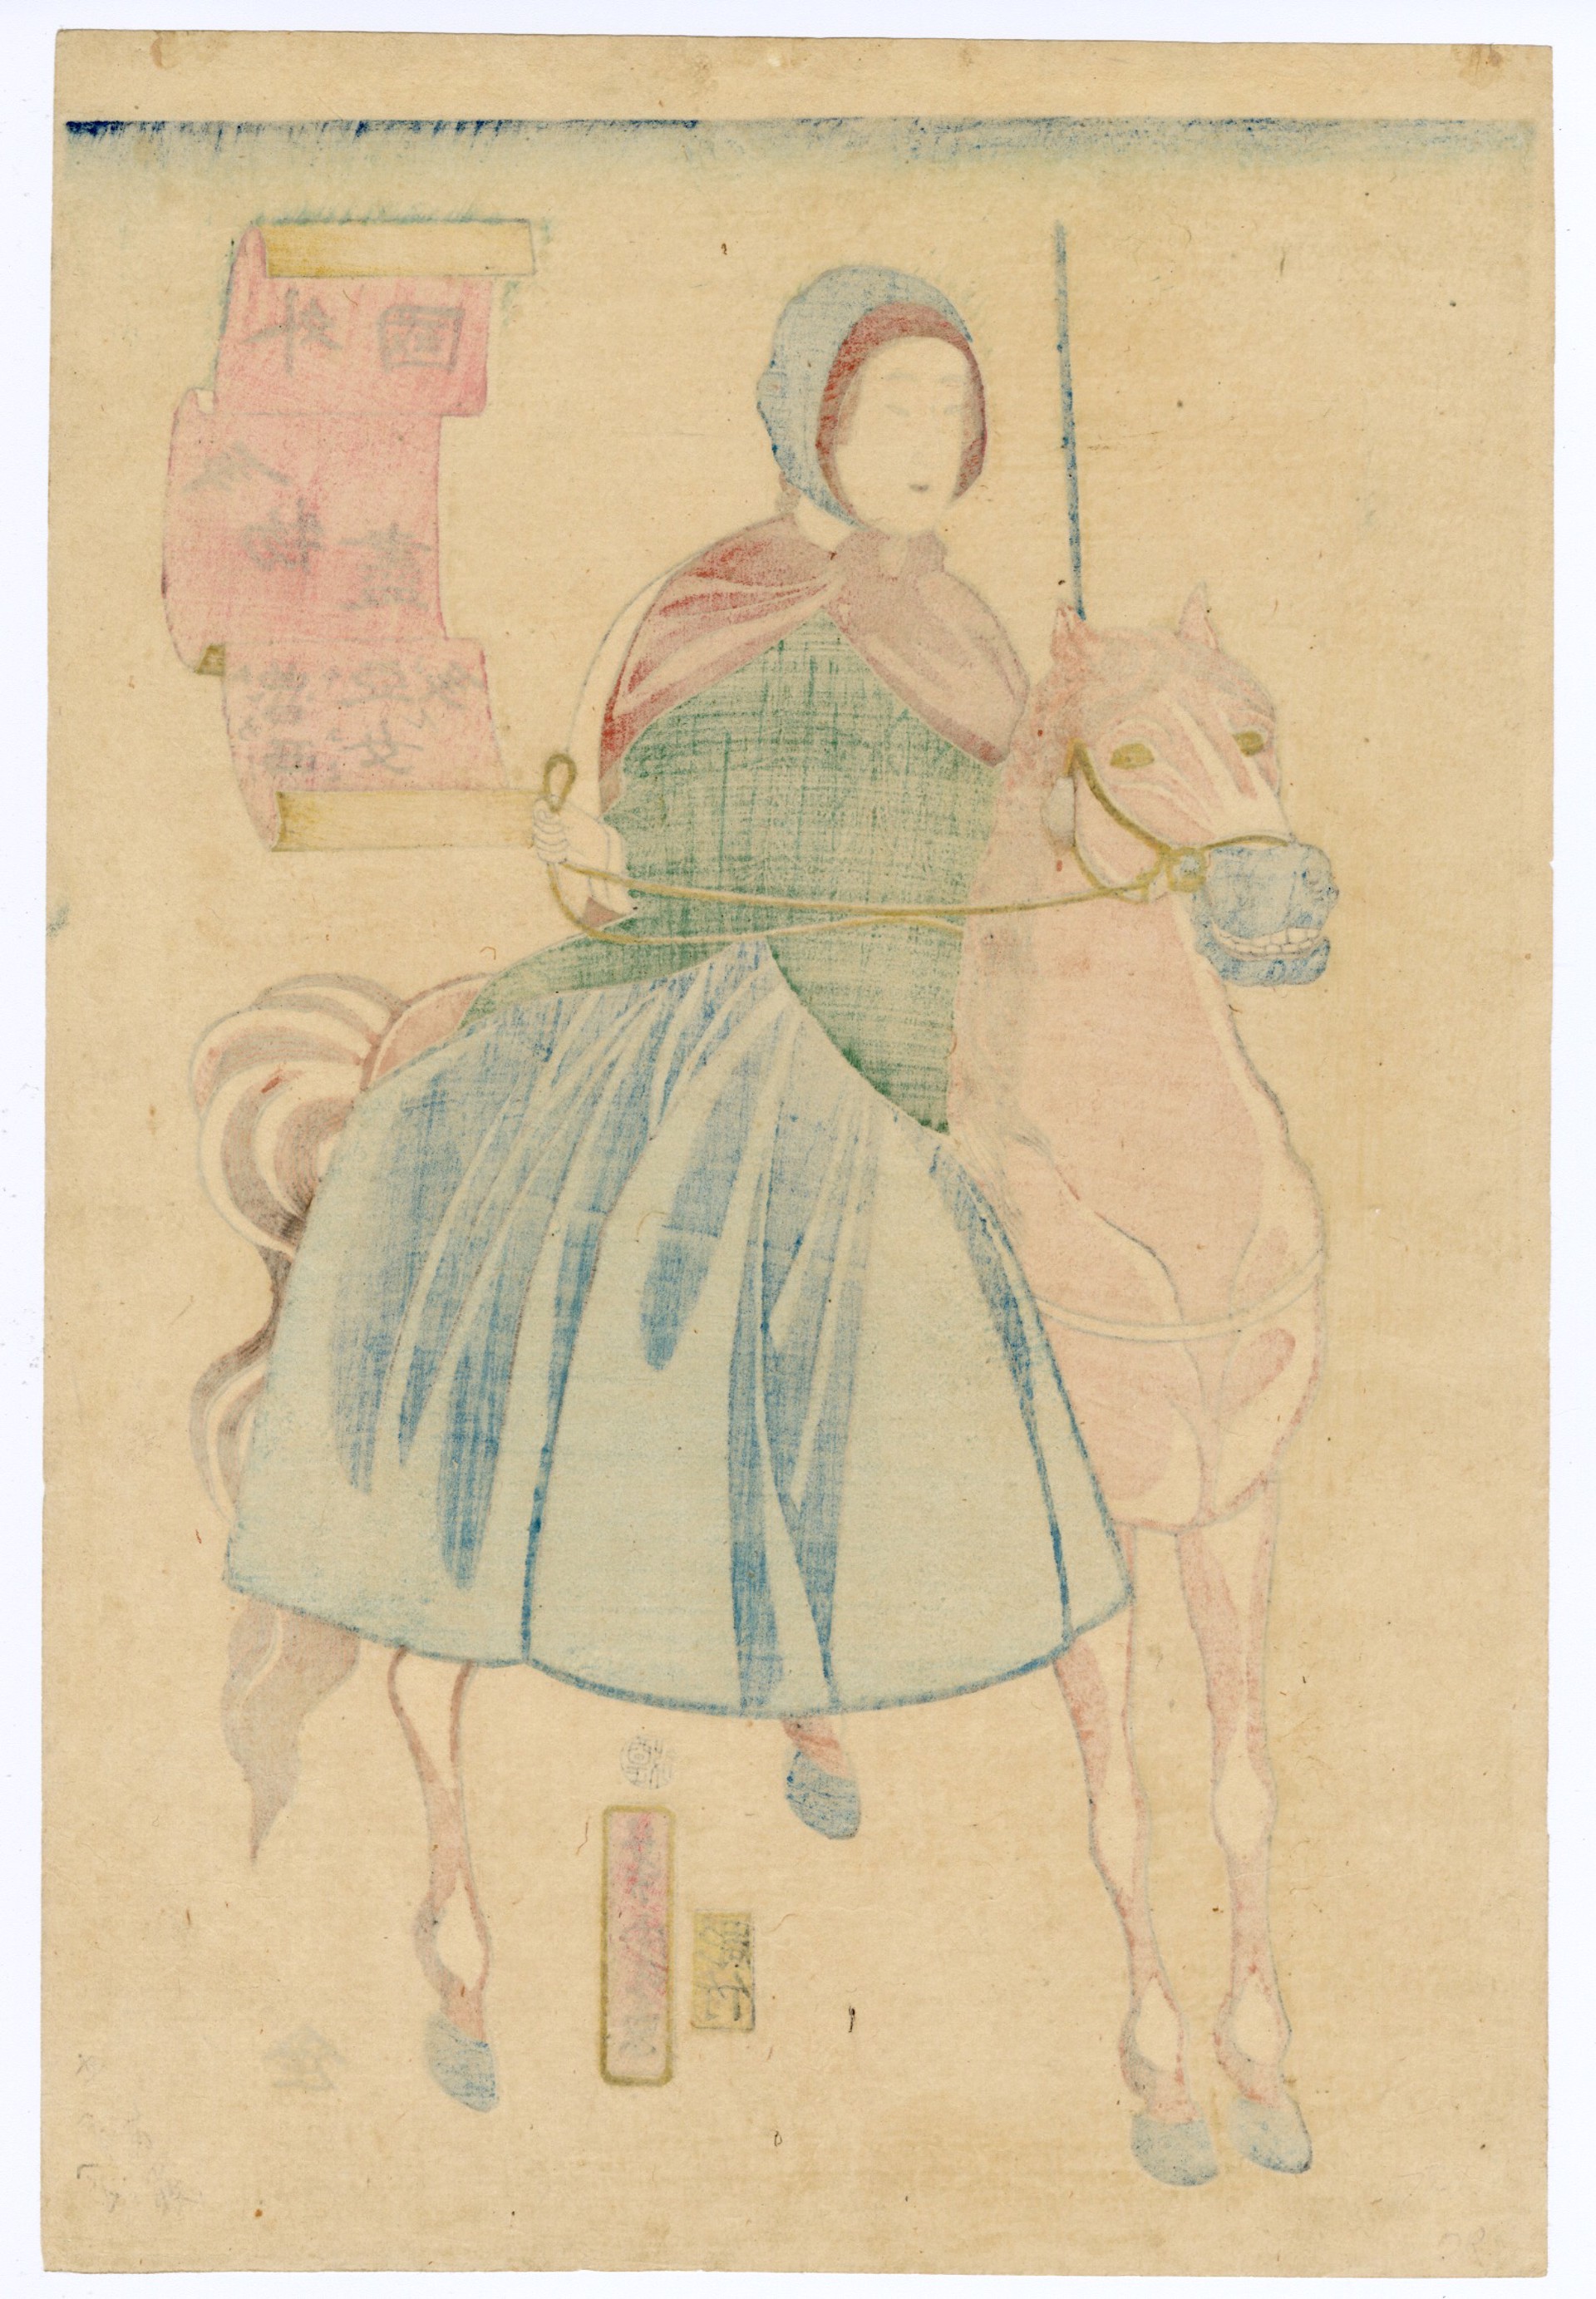 Russian Woman on Horseback by Yoshitora